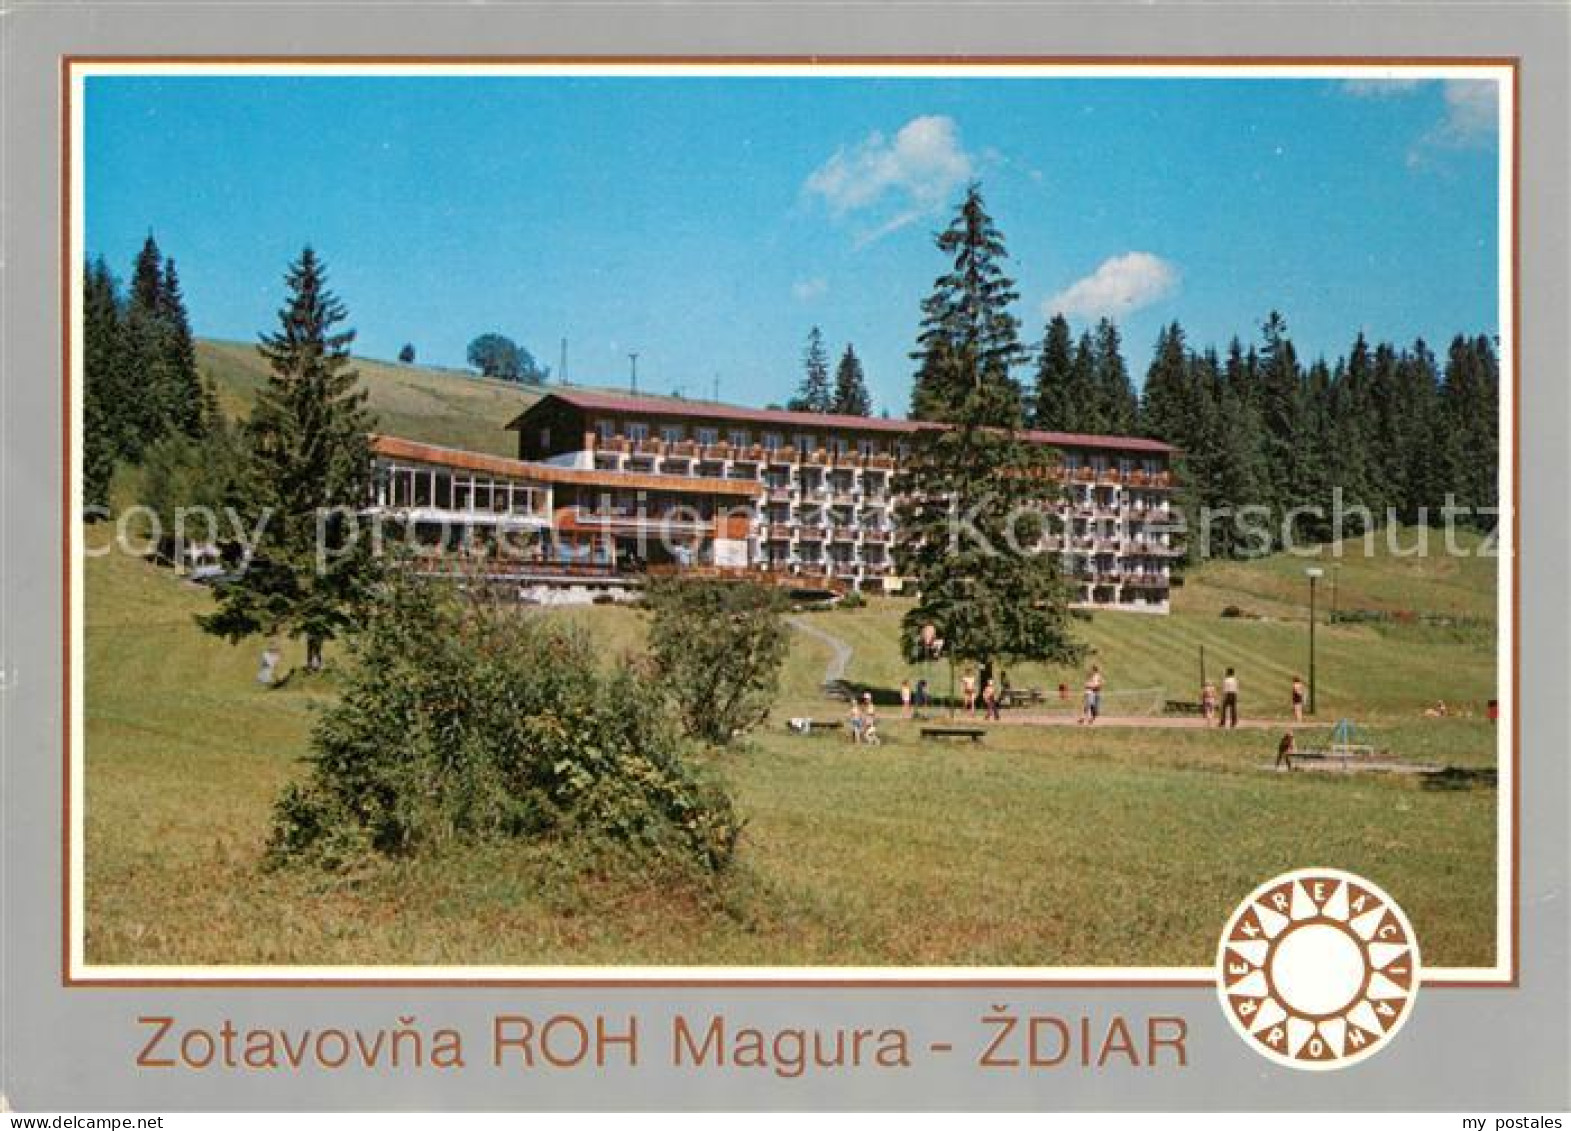 73062464 Zdiar Zotavovna ROH Magura Zdiar - Slowakije